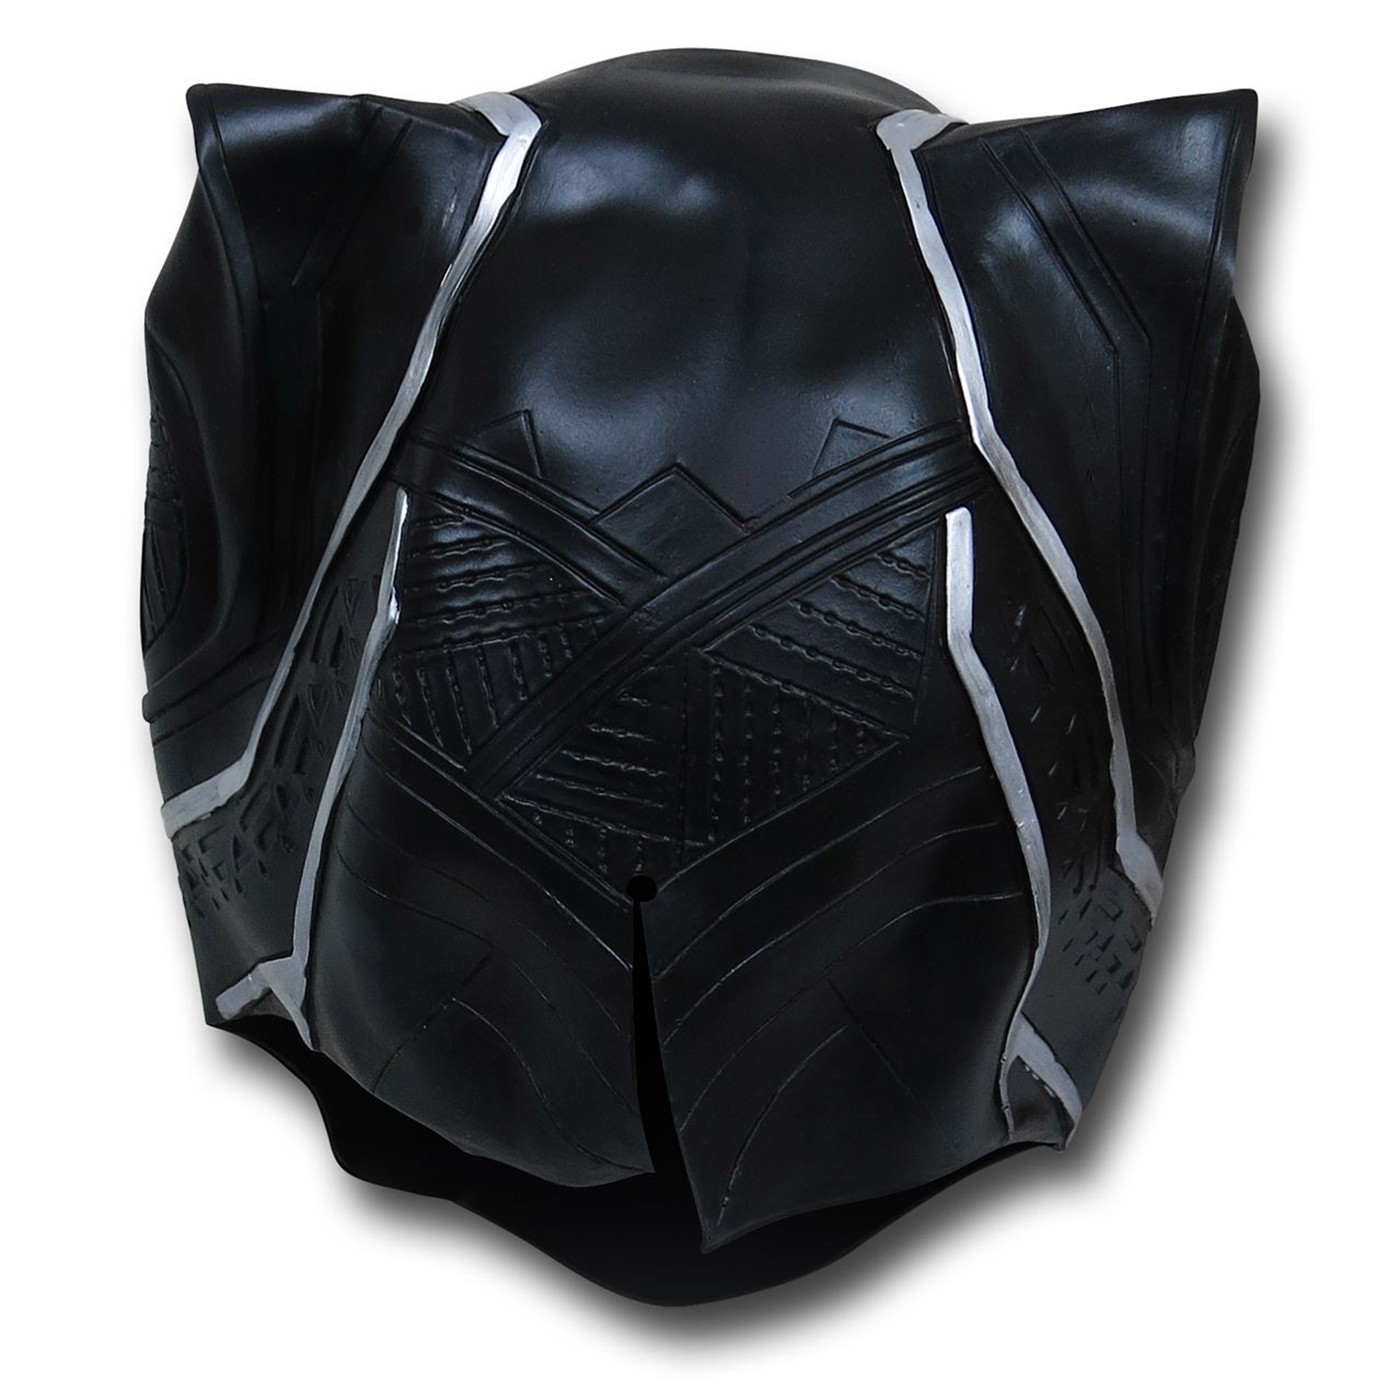 Black Panther Marvel Superheroes Black Vinyl Halloween Costume Mask, for Adult - image 3 of 3